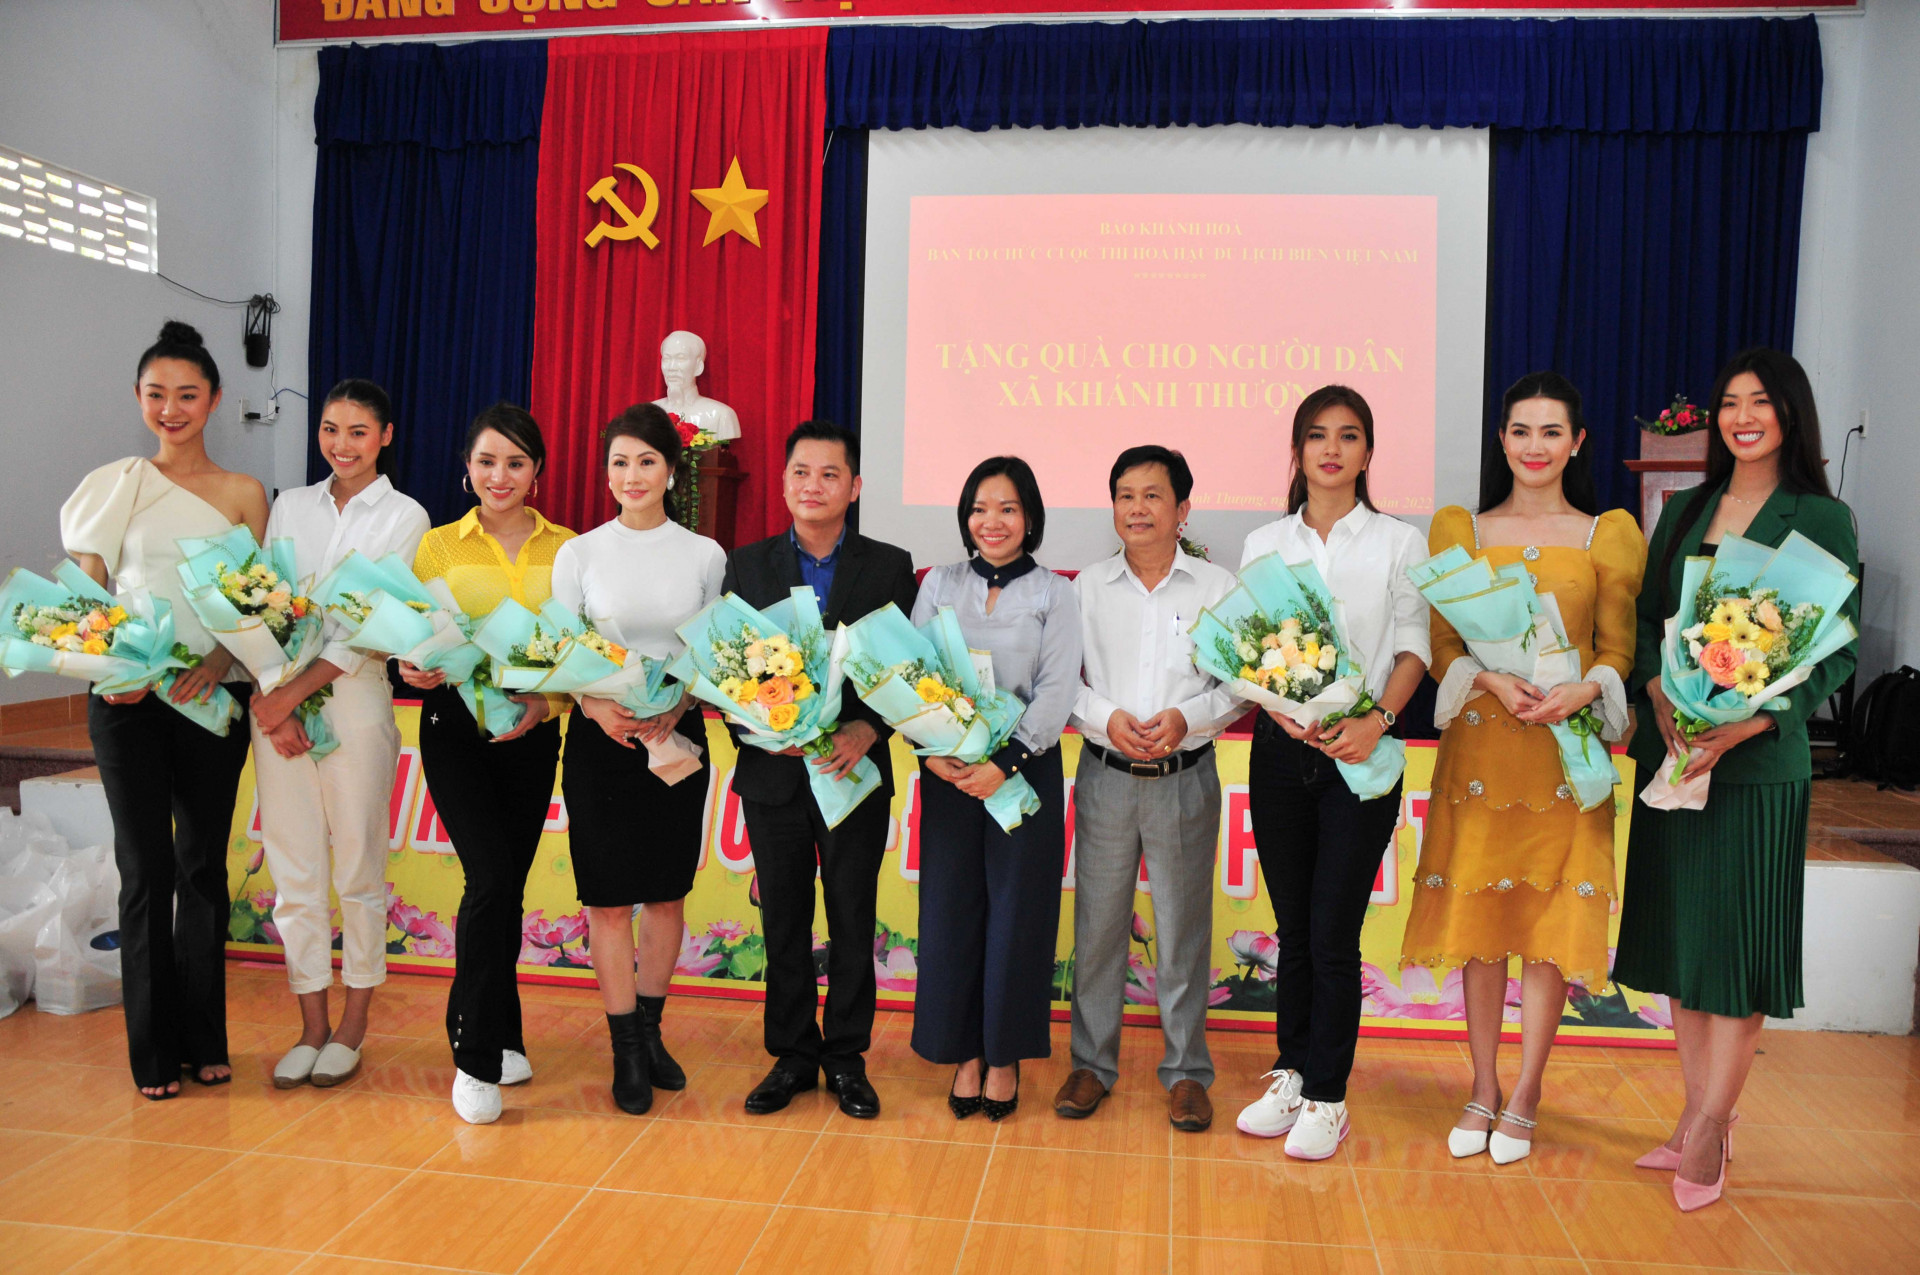 Lãnh đạo UBND xã Khánh Thượng tặng hoa tri ân các đơn vị và các đại sứ, người đẹp